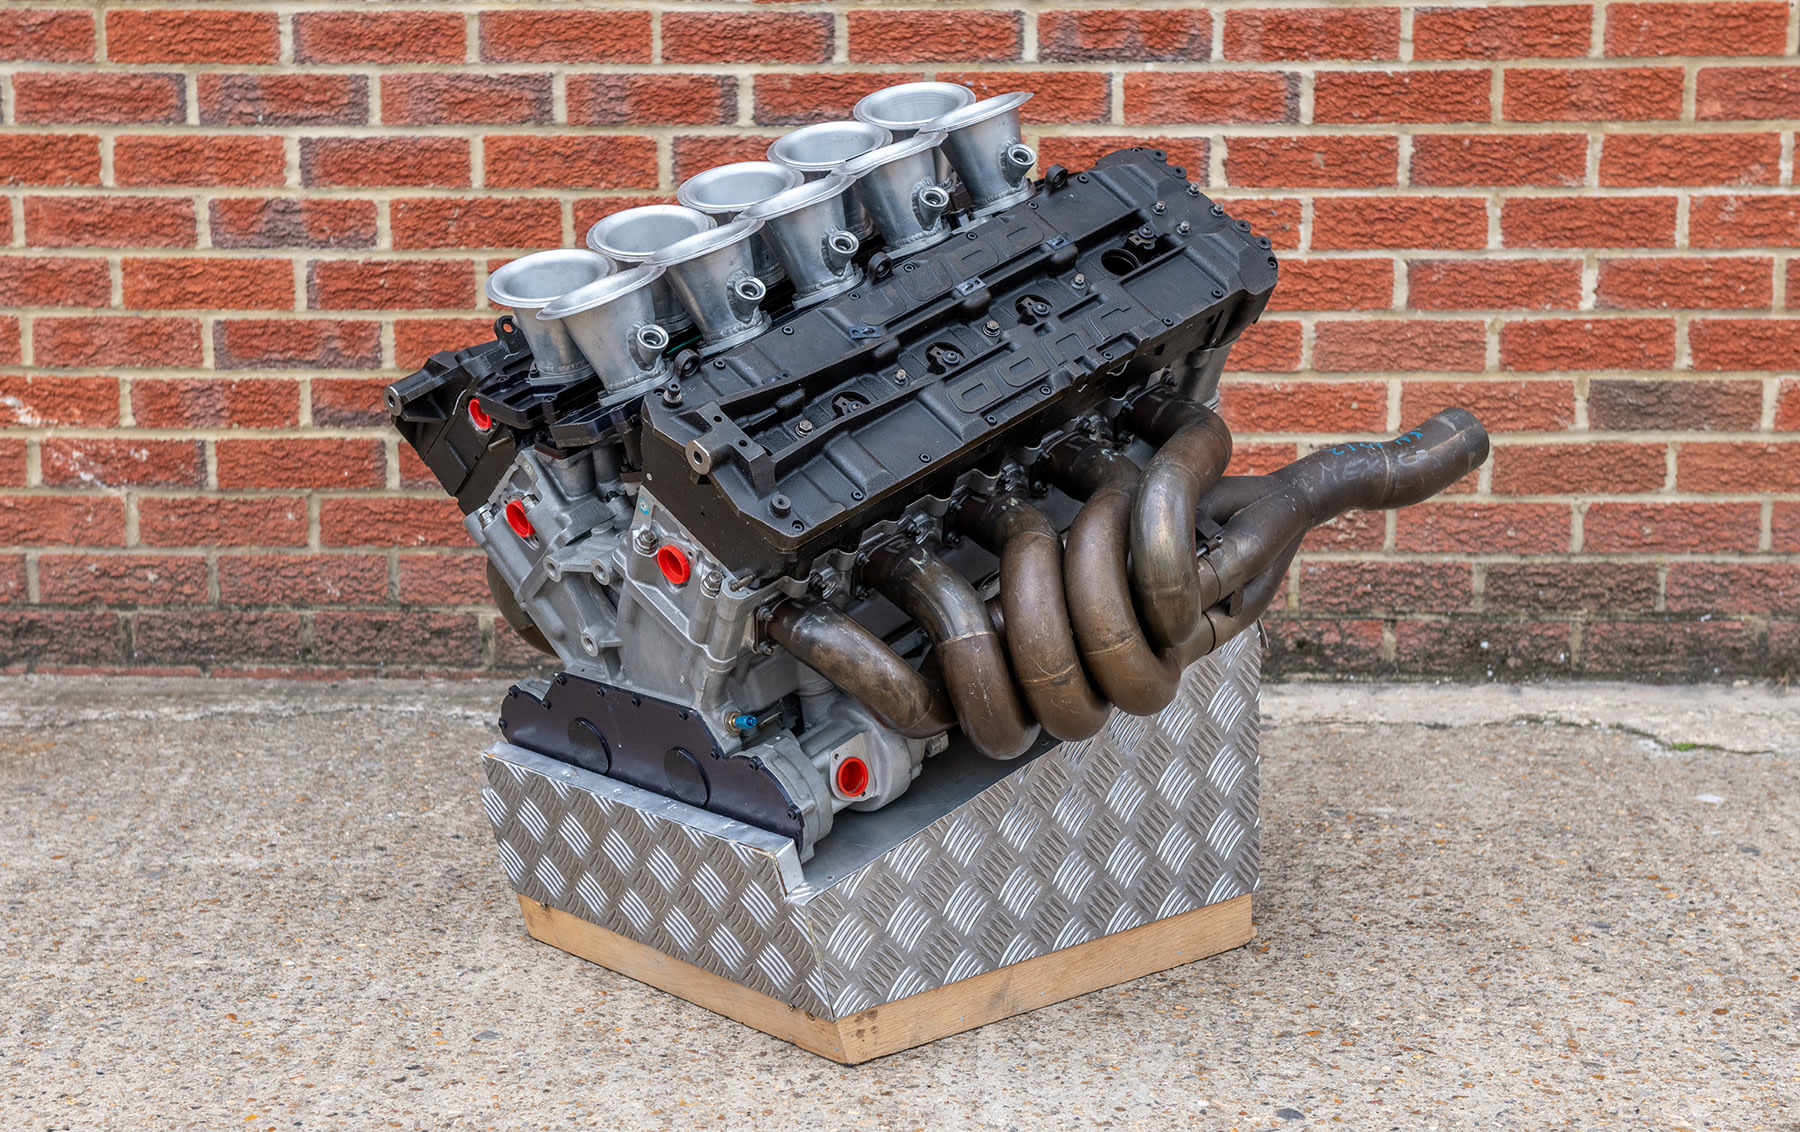 1991 Judd GV V-10 Formula One Engine